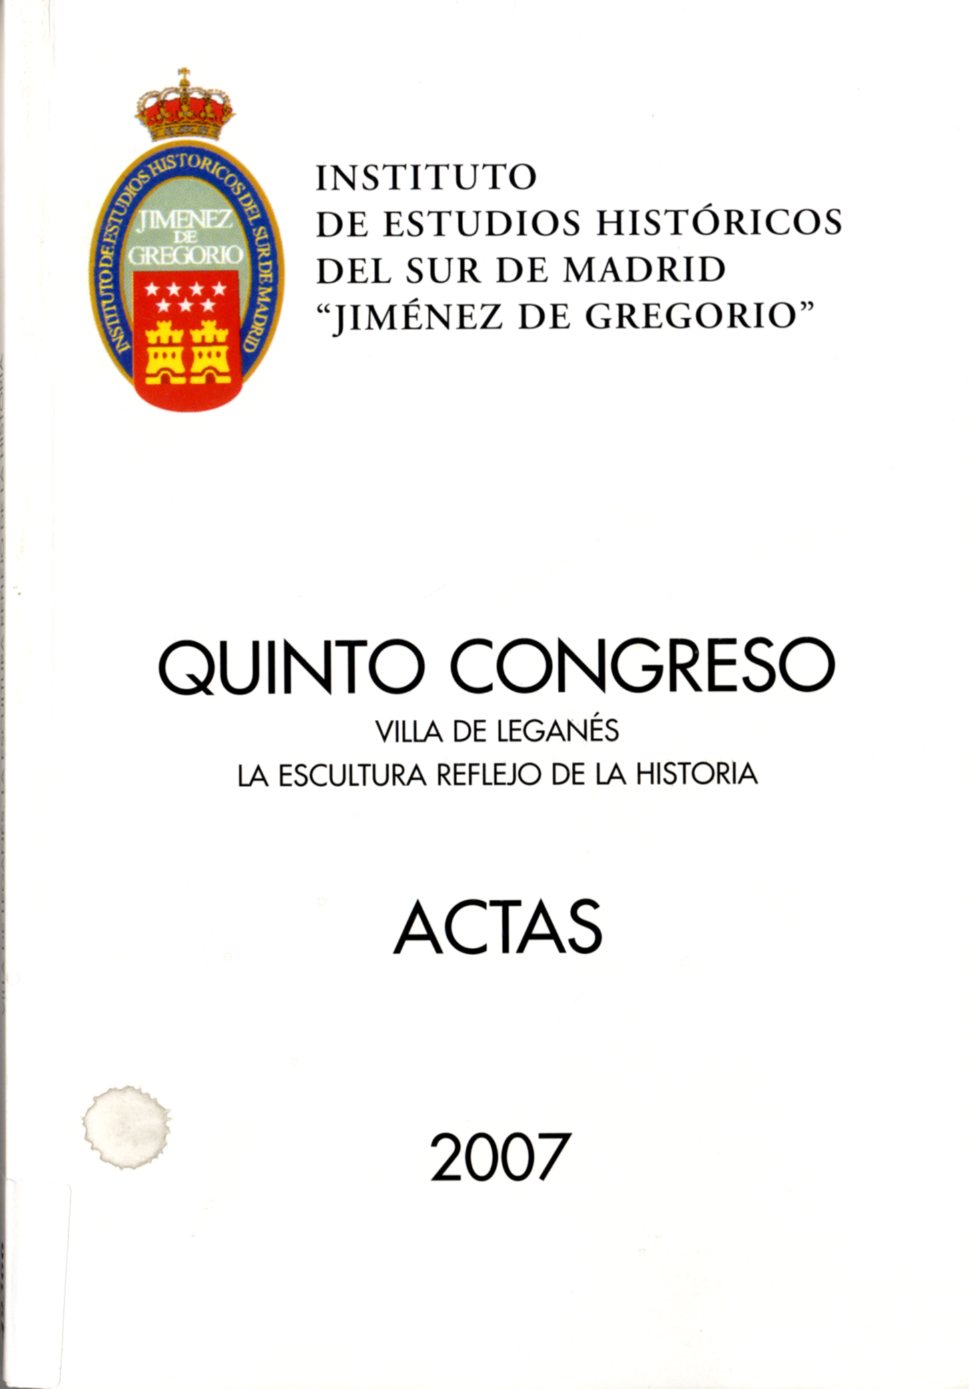 Imagen de portada del libro Quinto Congreso del Instituto de Estudios Históricos del sur de Madrid "Jiménez de Gregorio"